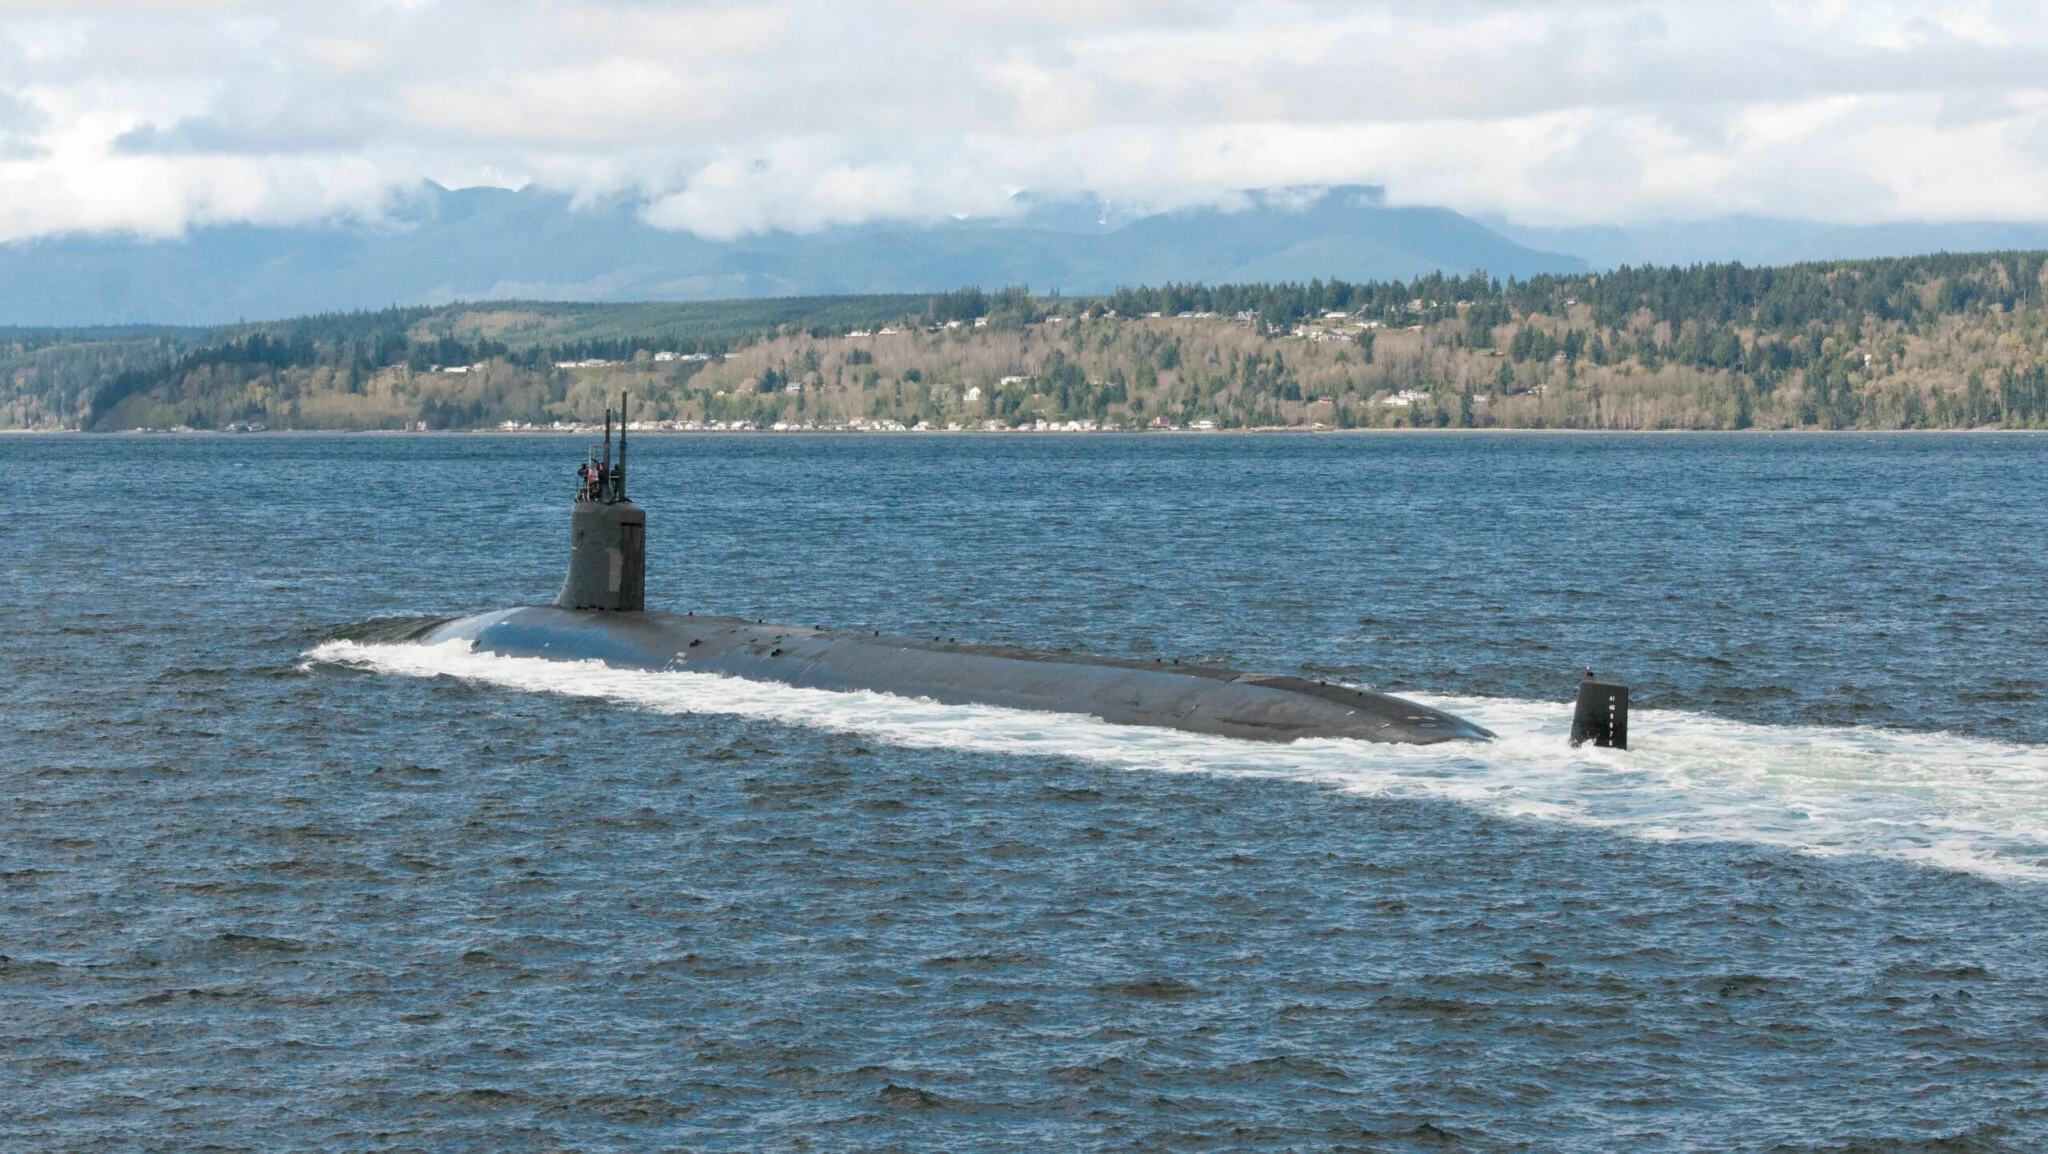 De kosten van de vloot van de Amerikaanse marine zullen met tientallen miljarden dollars stijgen door de bouw van nucleaire onderzeeërs.